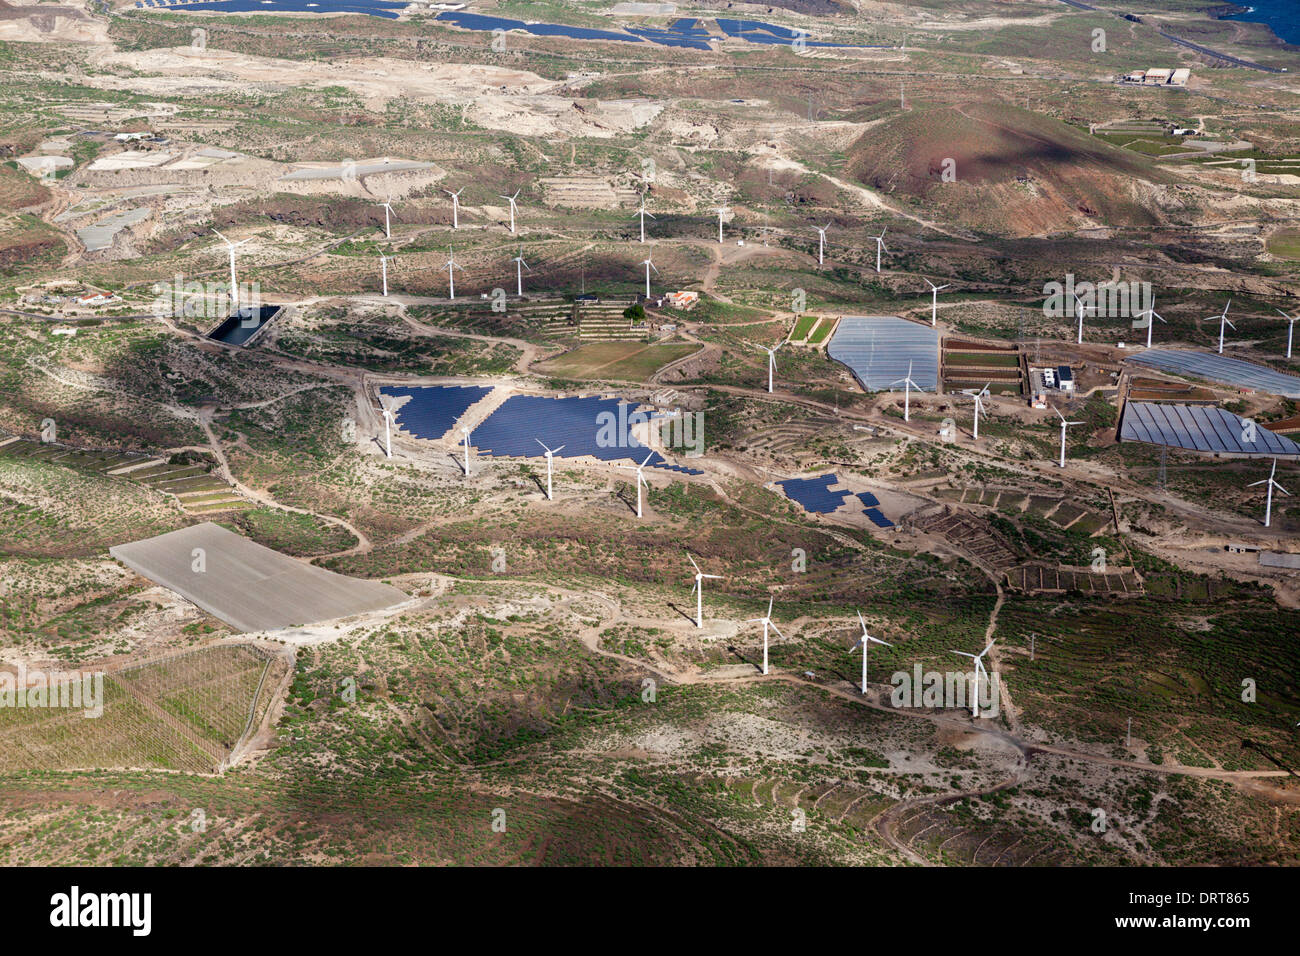 Vista aerea di collettori solari e wind power station, Tenerife, Spagna Foto Stock